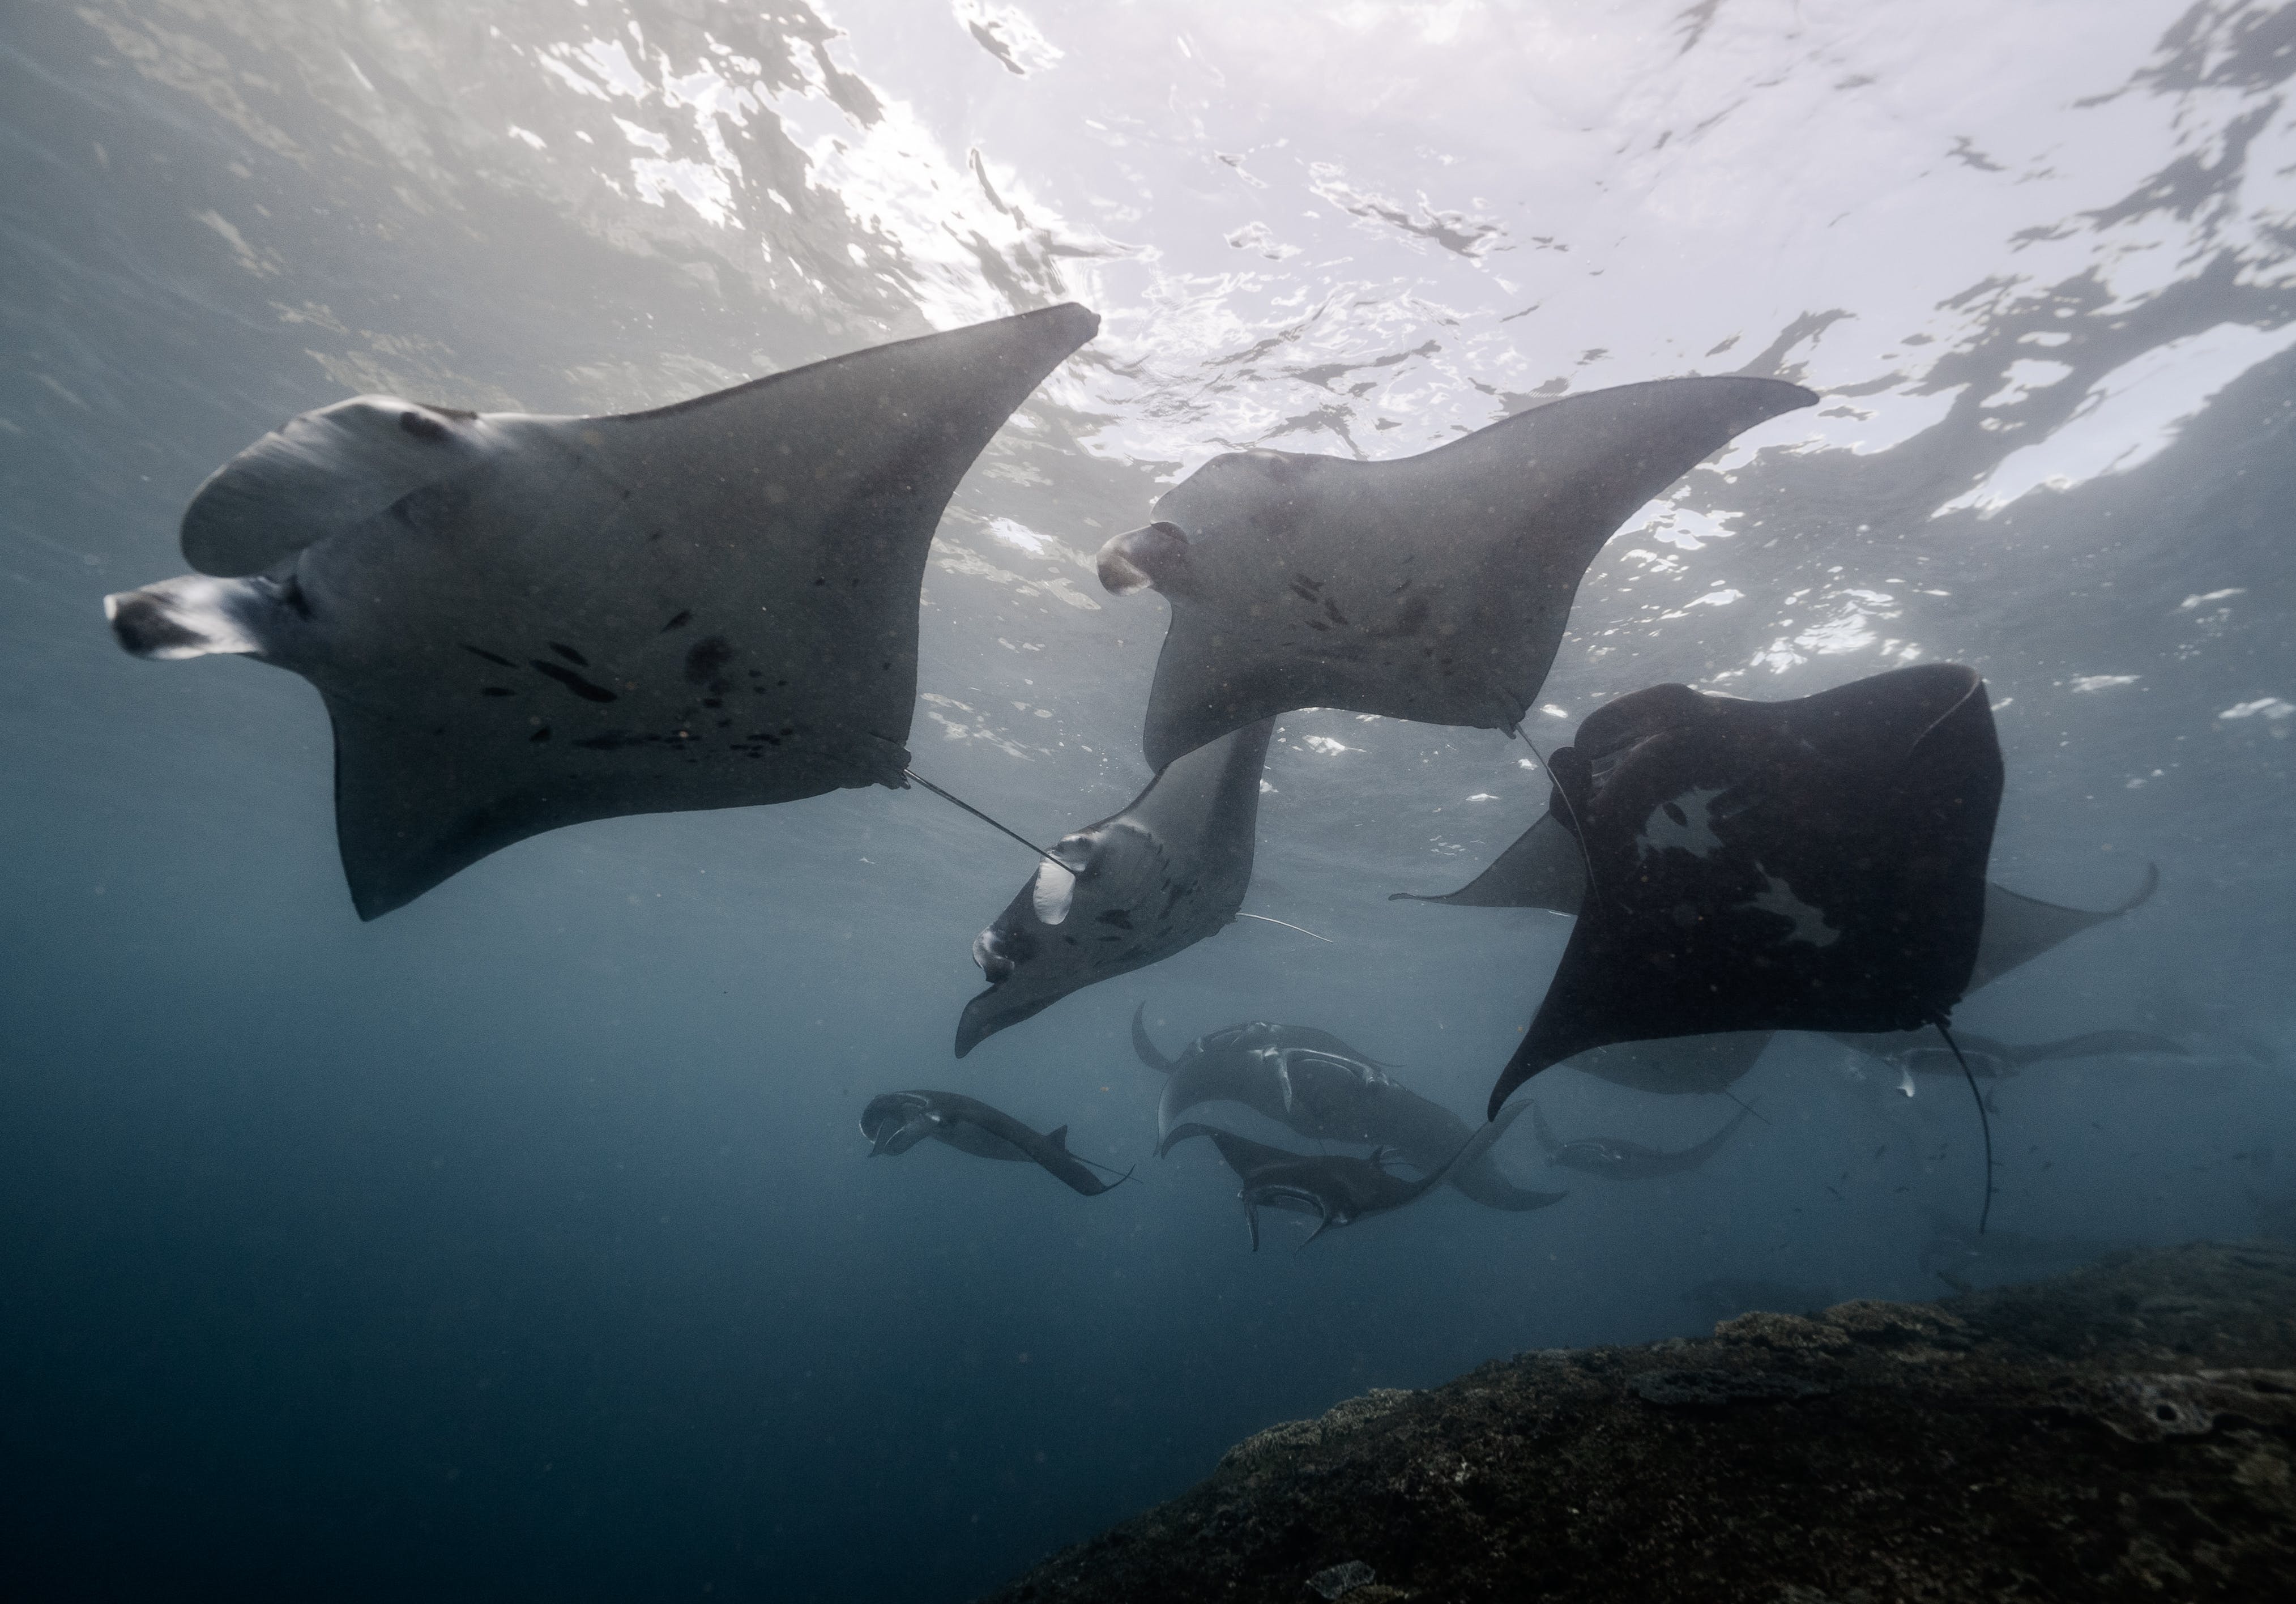 Gratis Fotos de stock gratuitas de acuático, animales, bajo el agua Foto de stock